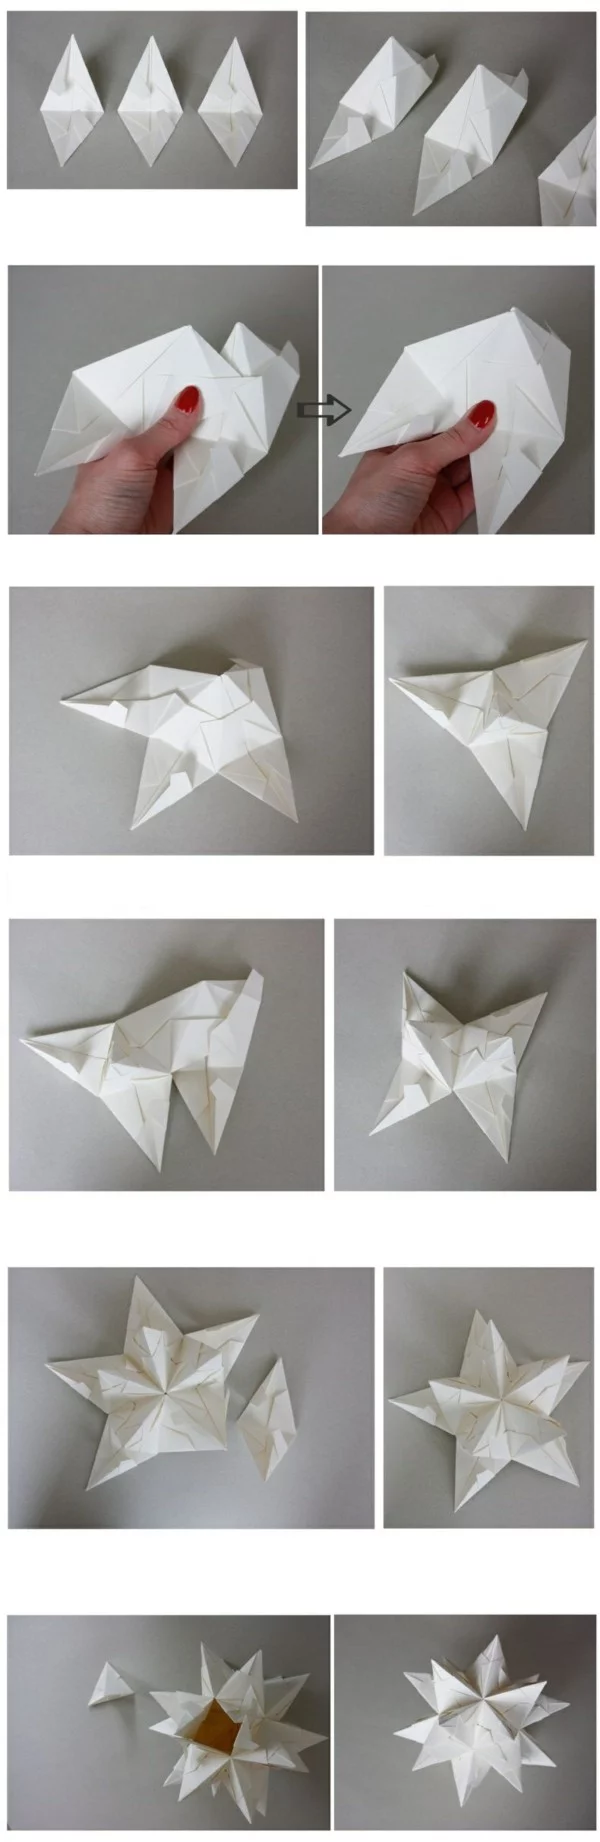 Schritt für Schritt Anleitung für Bascetta Sterne basteln kreatives DIY Projekt aus weißem Papier 